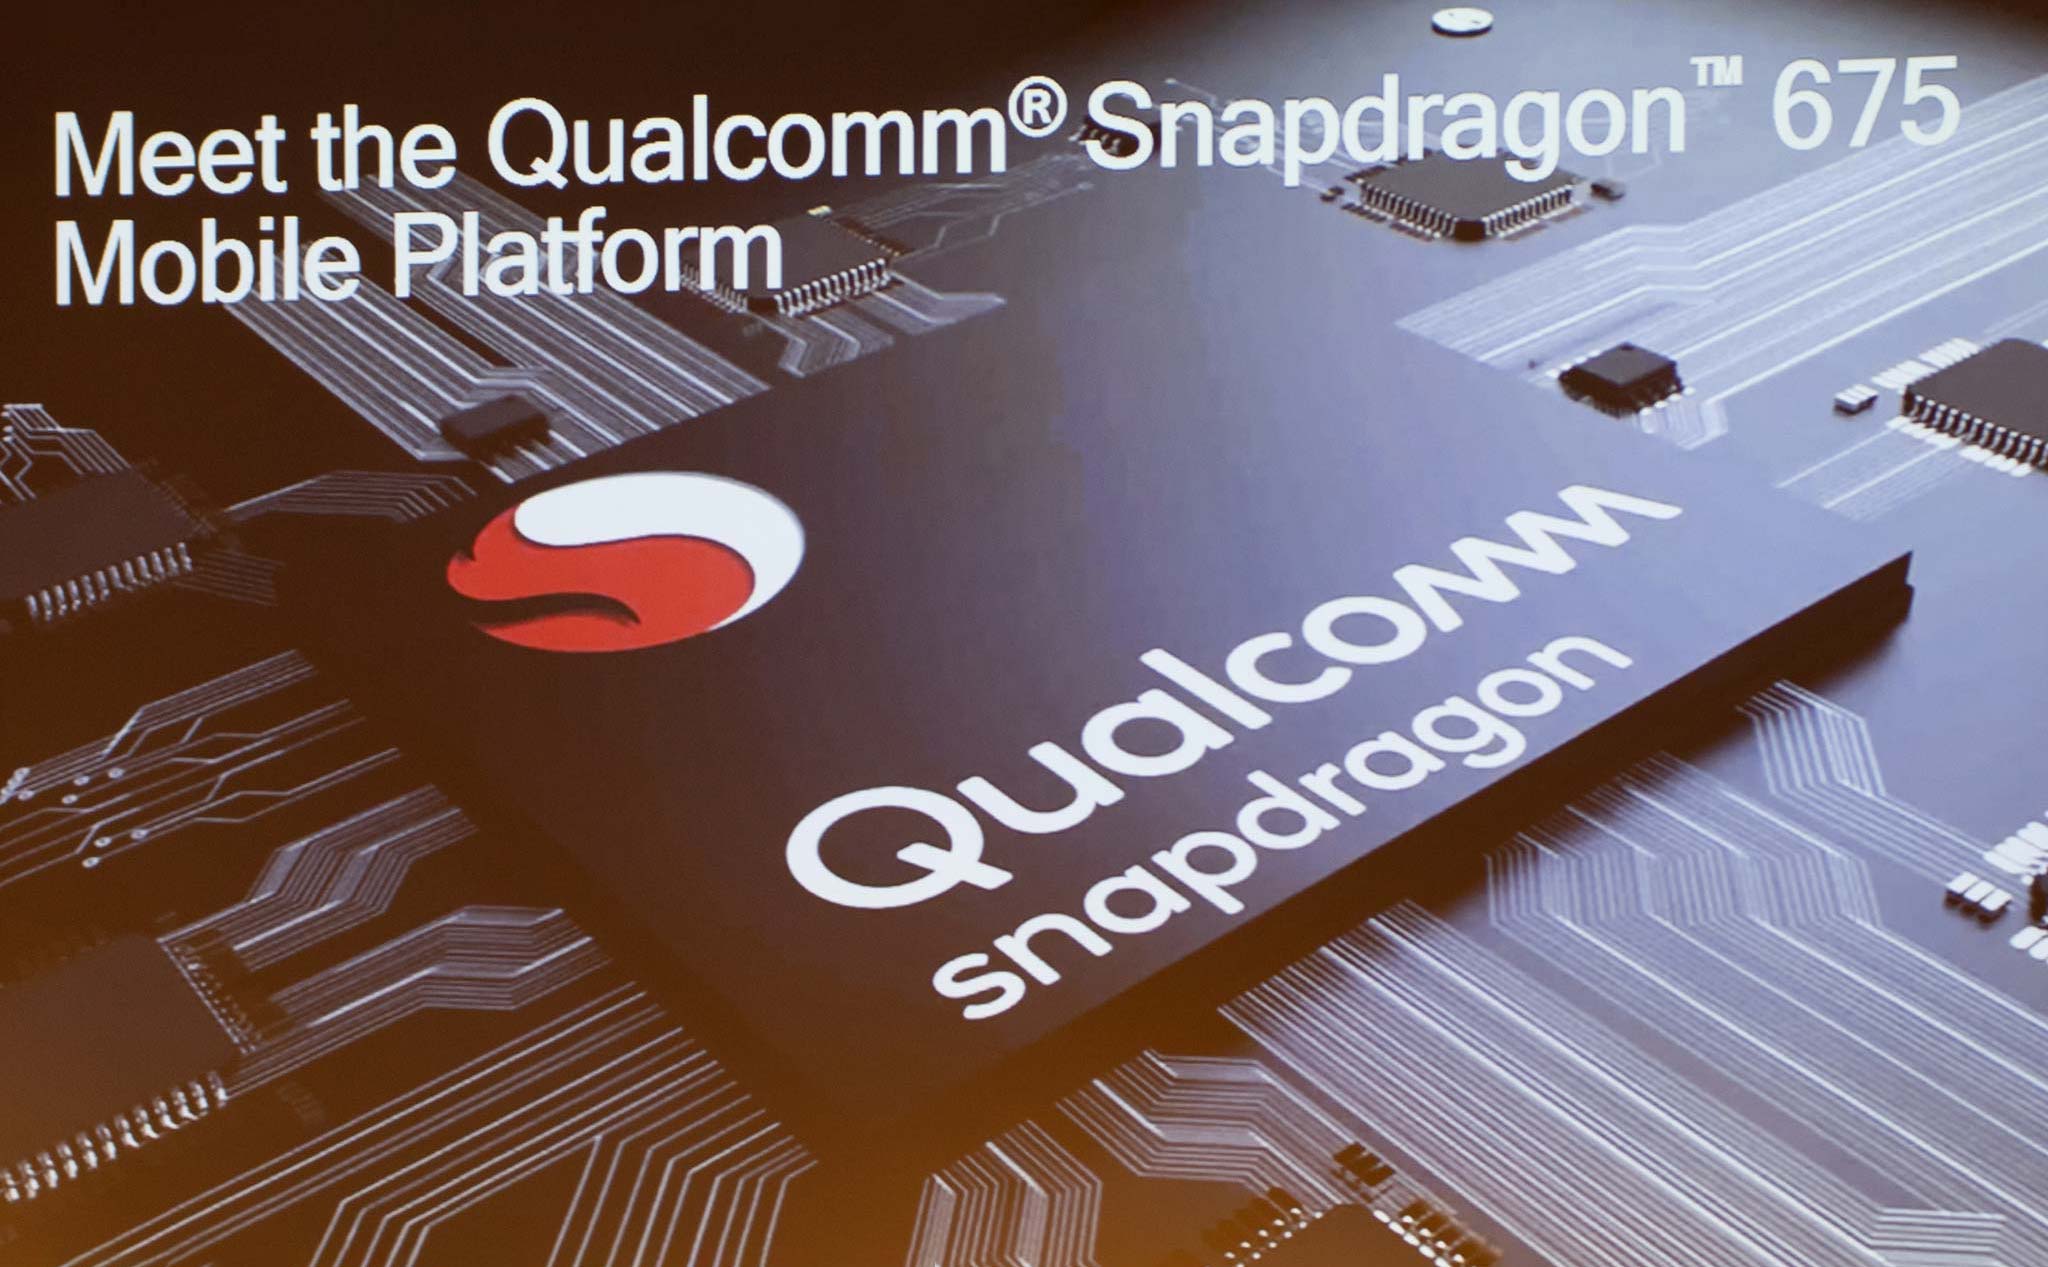 Snapdragon 675 ra mắt: tiến trình 11nm, tăng hiệu năng chơi game, chụp ảnh 3 camera, AI tích hợp sâu